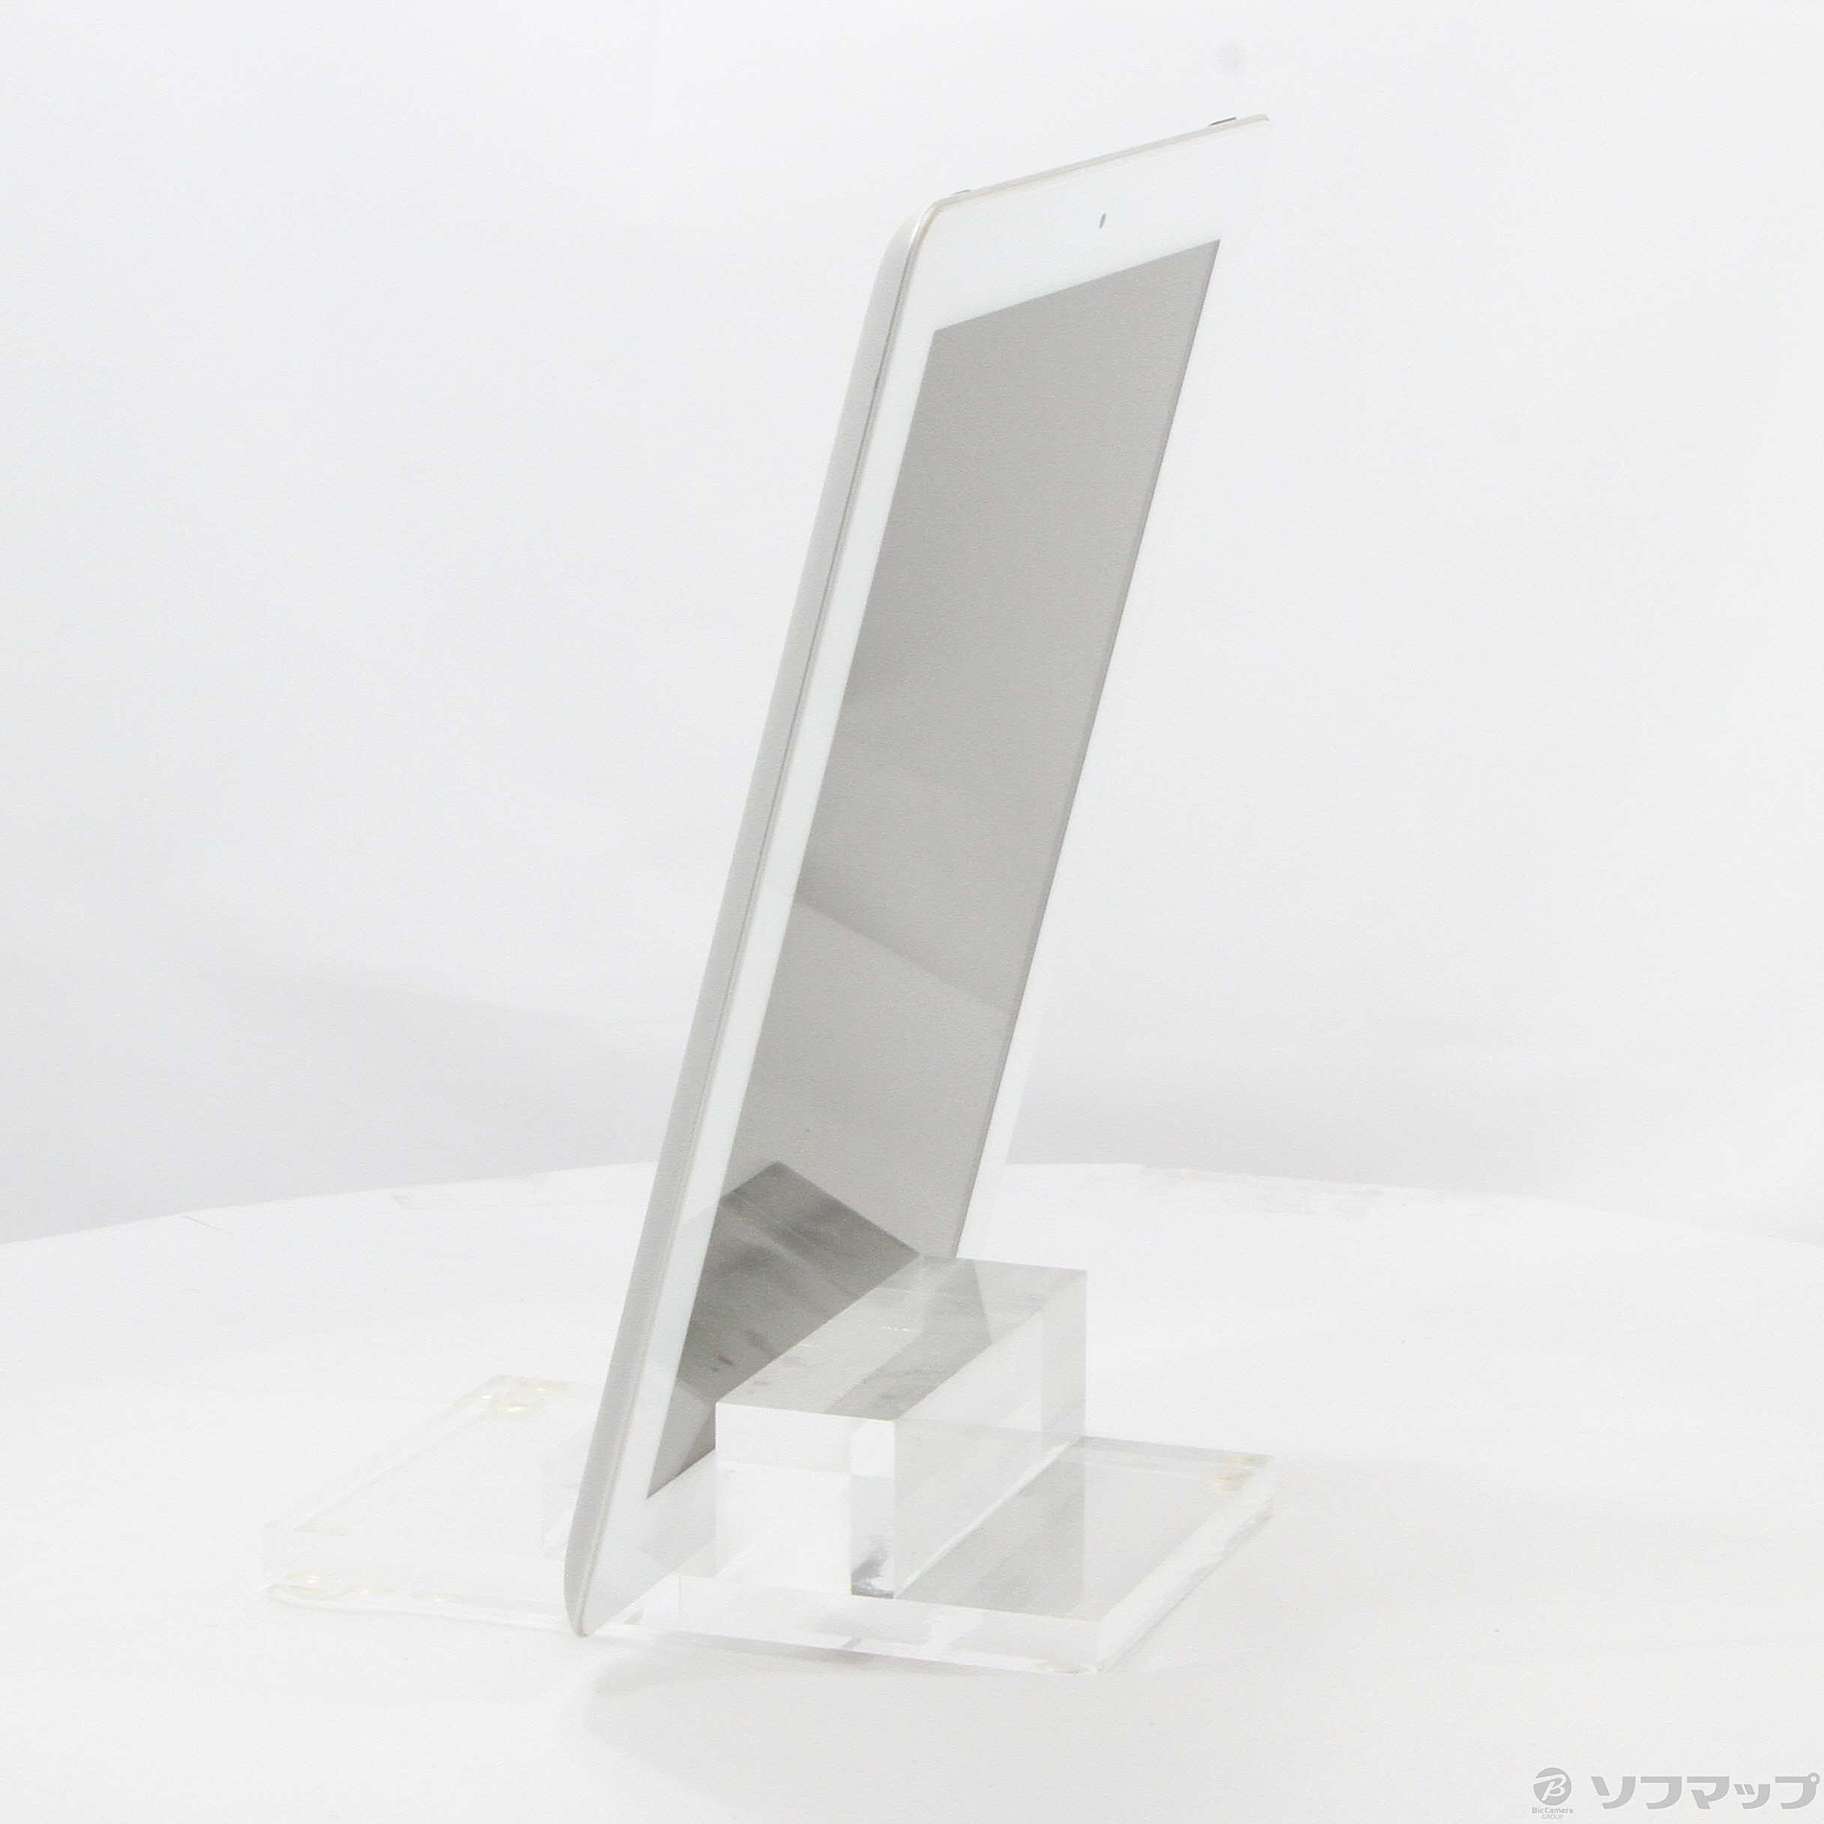 【専用】iPad 第三世代 64GB MD330J/A ホワイト